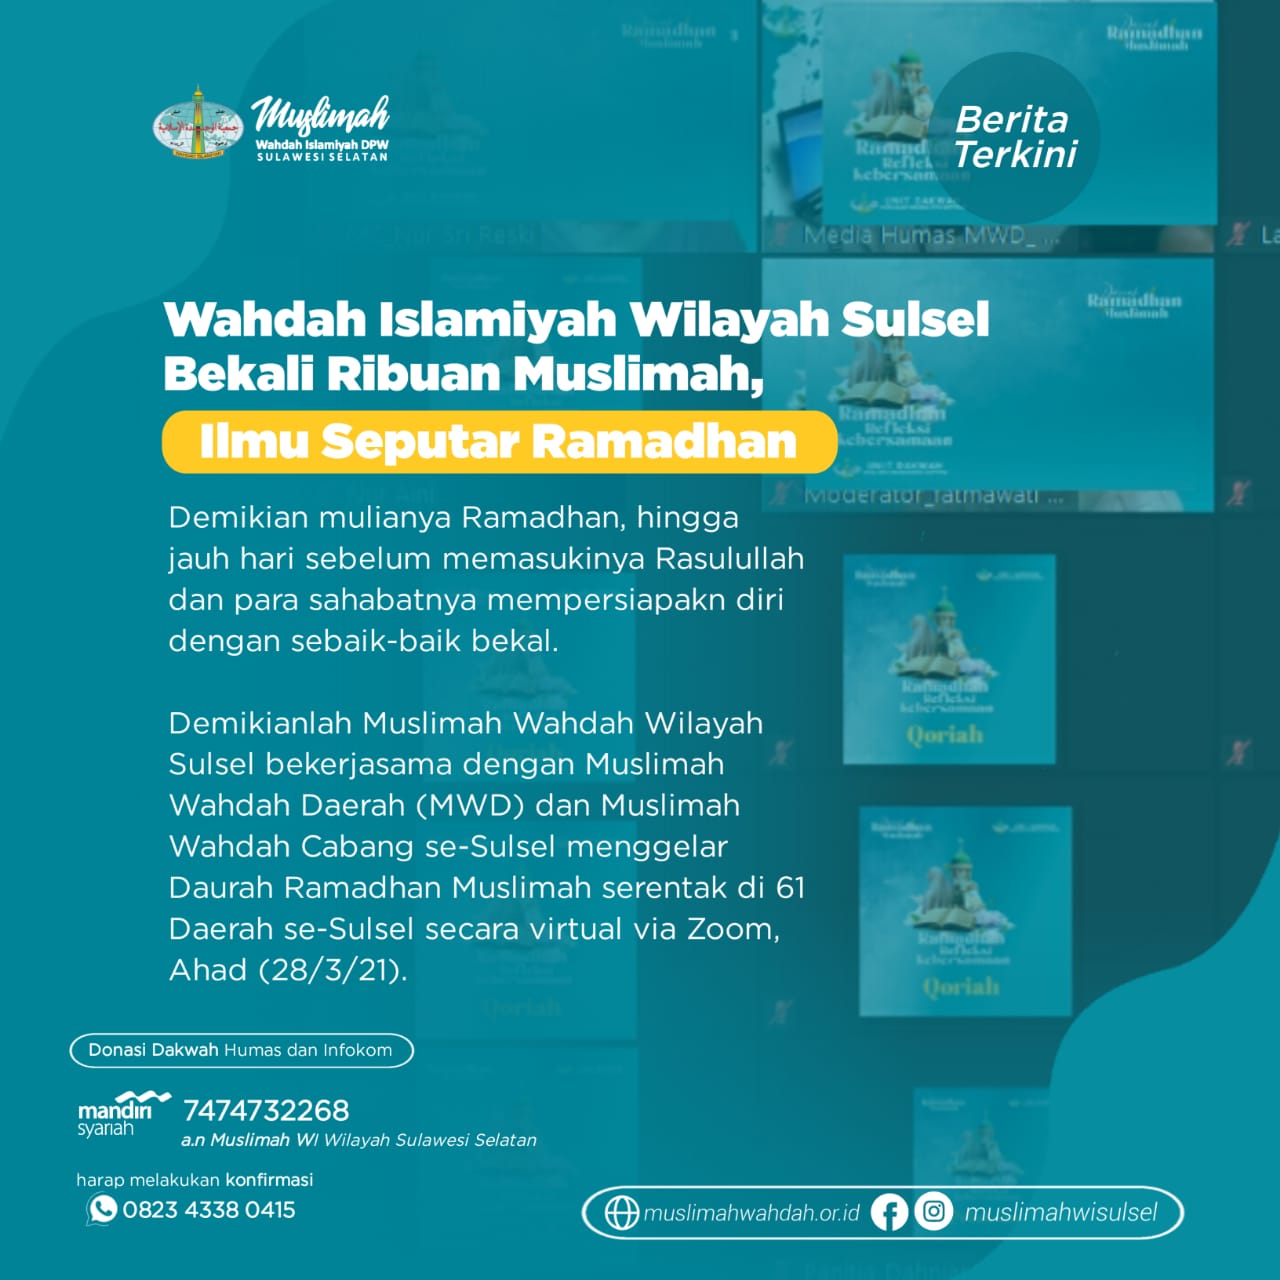 Wahdah Islamiyah Wilayah Sulsel Bekali Ribuan Muslimah Ilmu Seputar Ramadhan